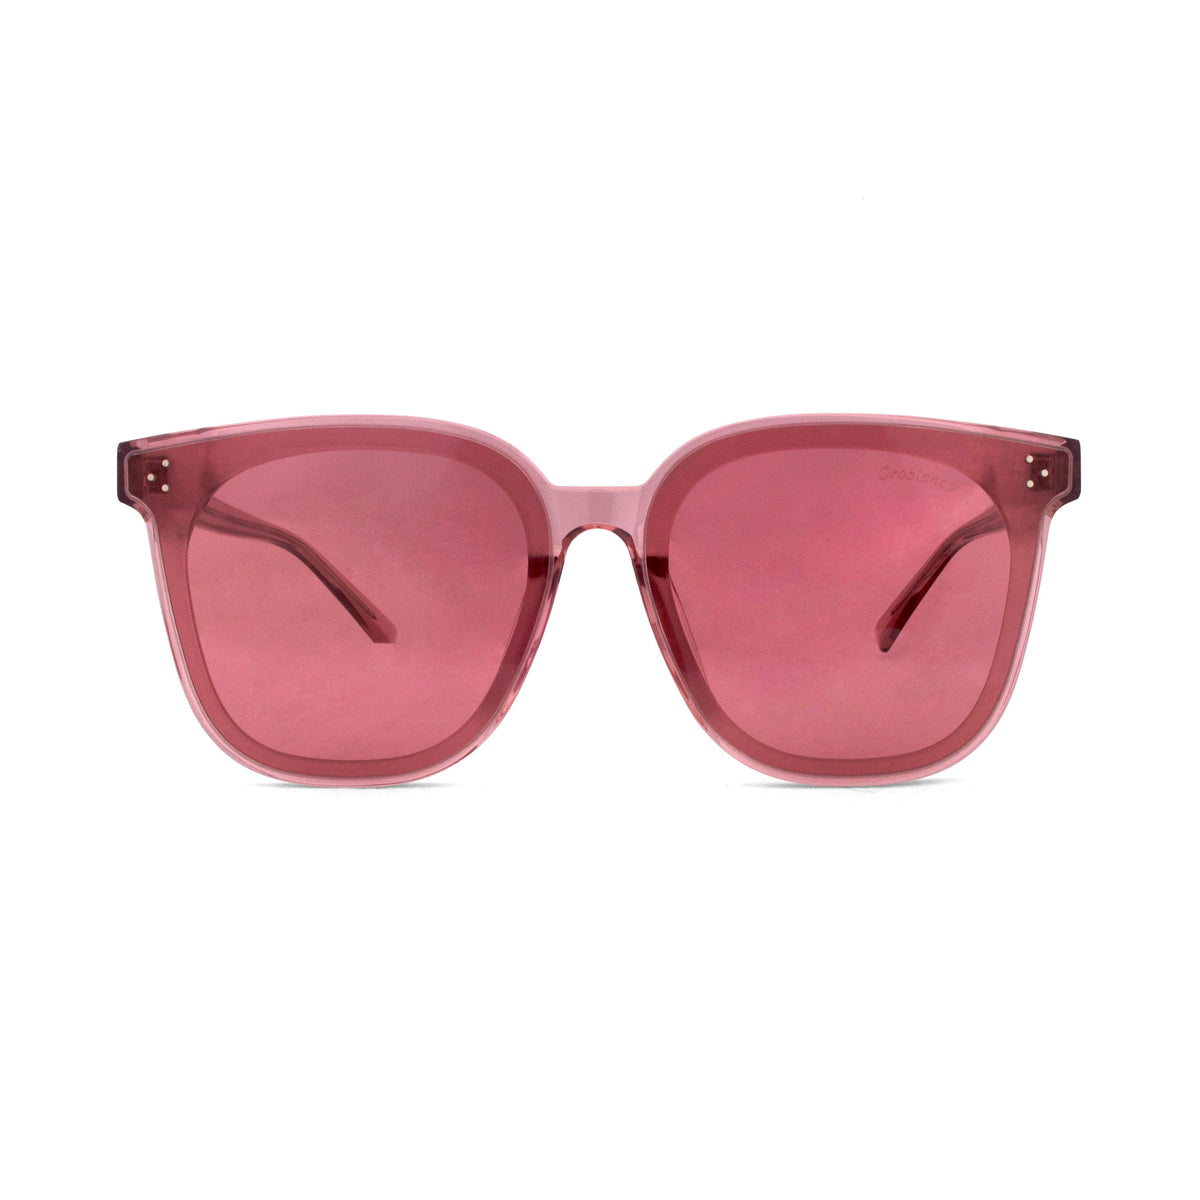 Orobianco Sunglasses-Sunglasses-Orobianco-Pink-Cufflinks.com.sg